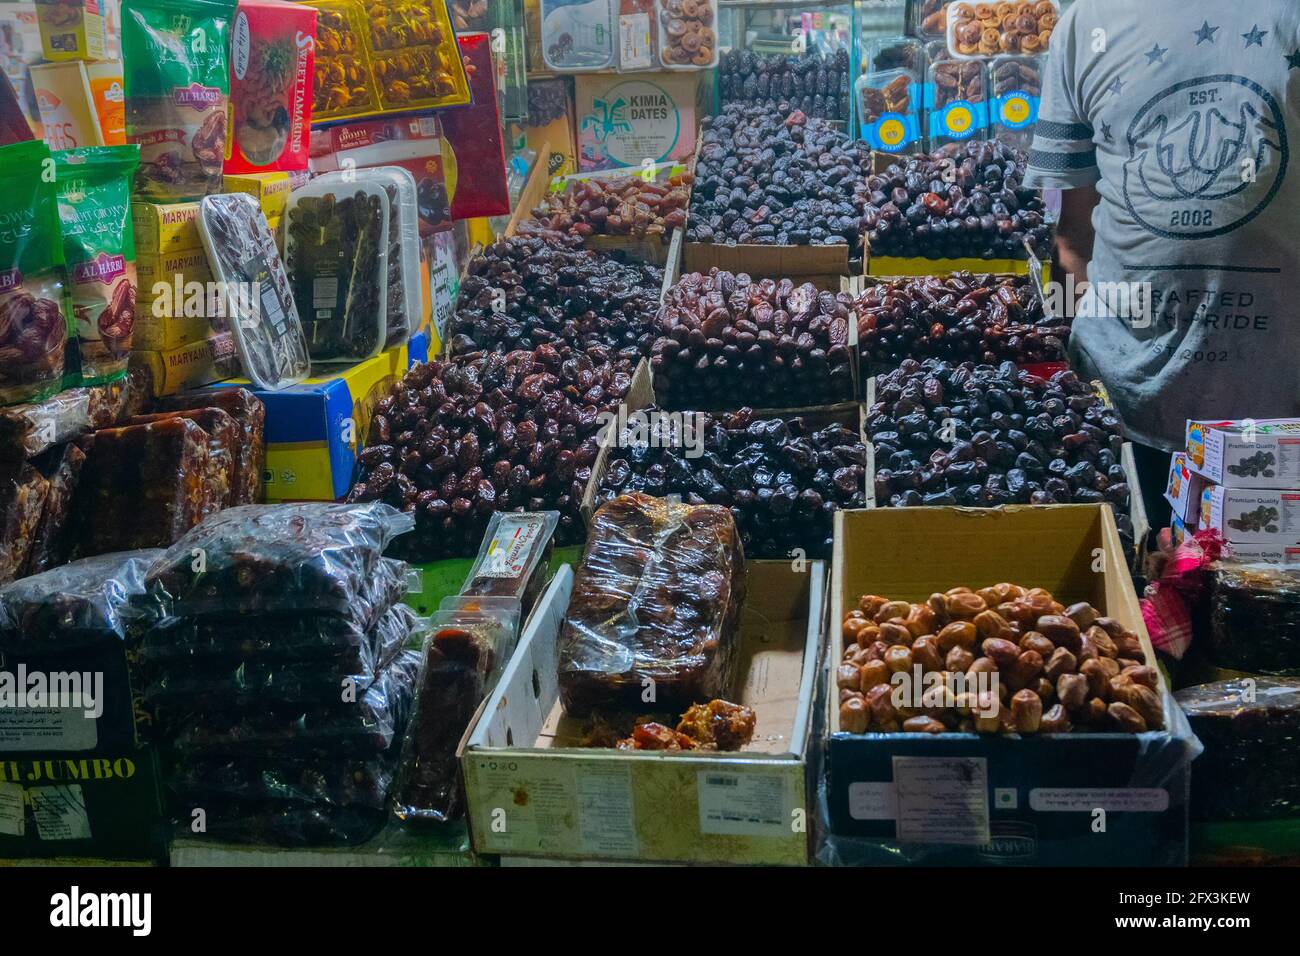 VECCHIO MERCATO, NUOVA DELHI, INDIA - OTTOBRE 28 2018 : Phoenix dactylifera, comunemente conosciuto come data o palma della data, è un articolo comune e famoso della frutta - essendo s. Foto Stock